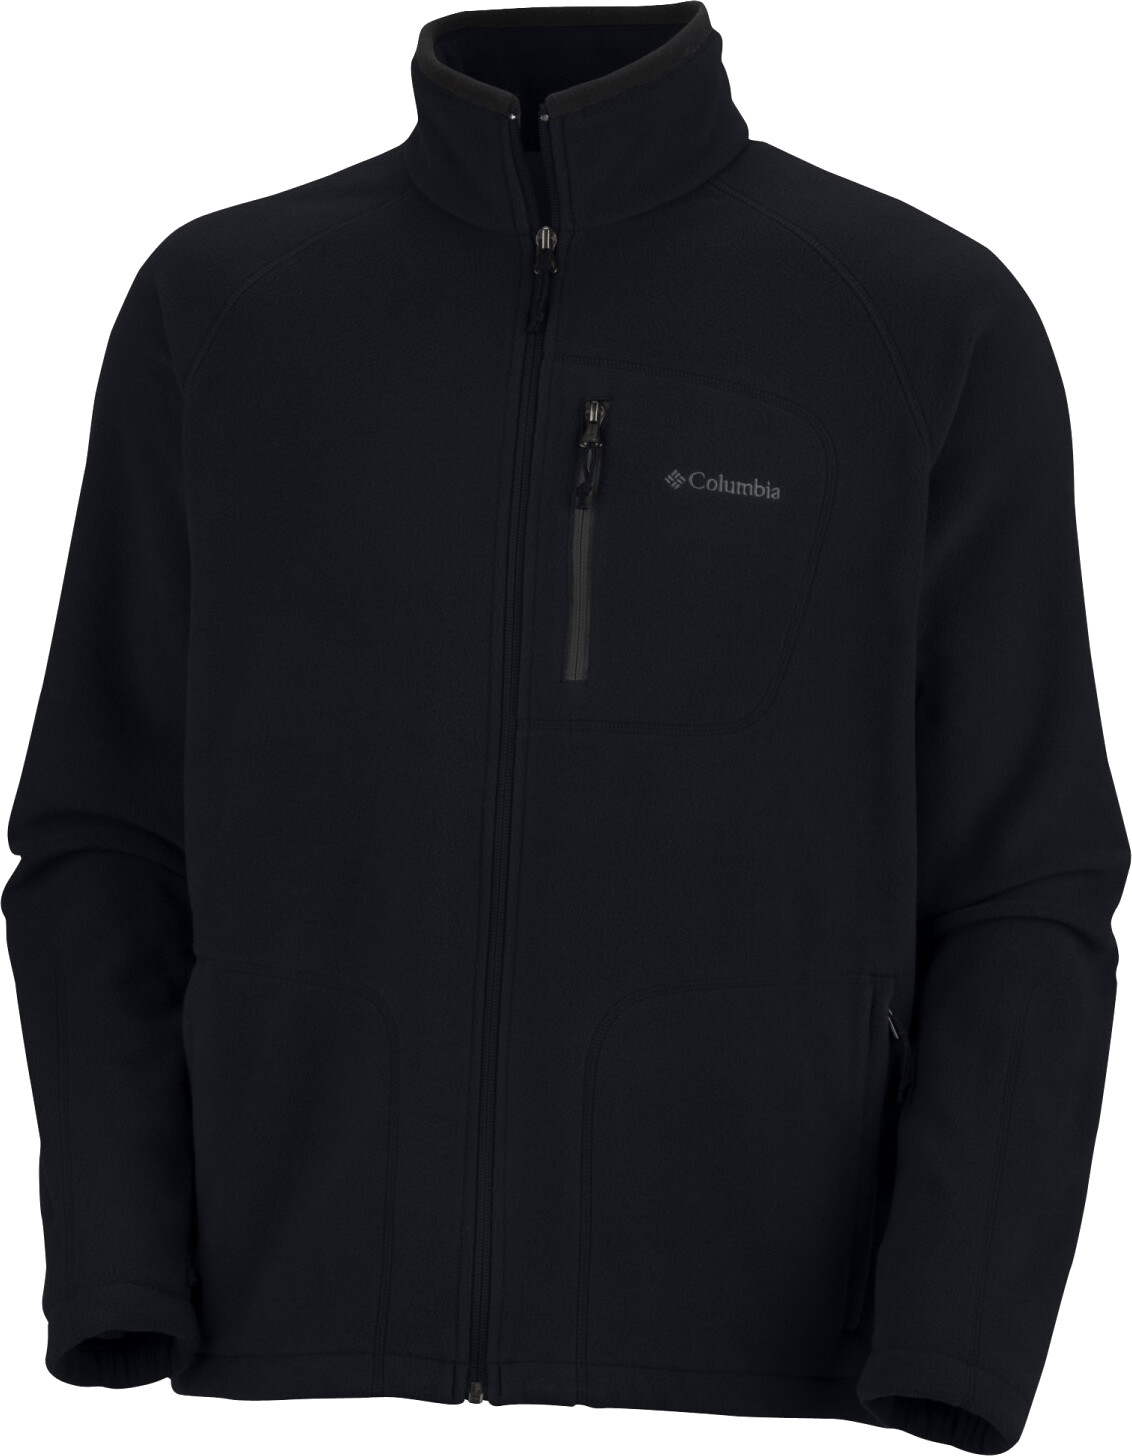 Forro Polar Columbia Fast Trek II Full Zip Fleece en color negro desde  28,48€.